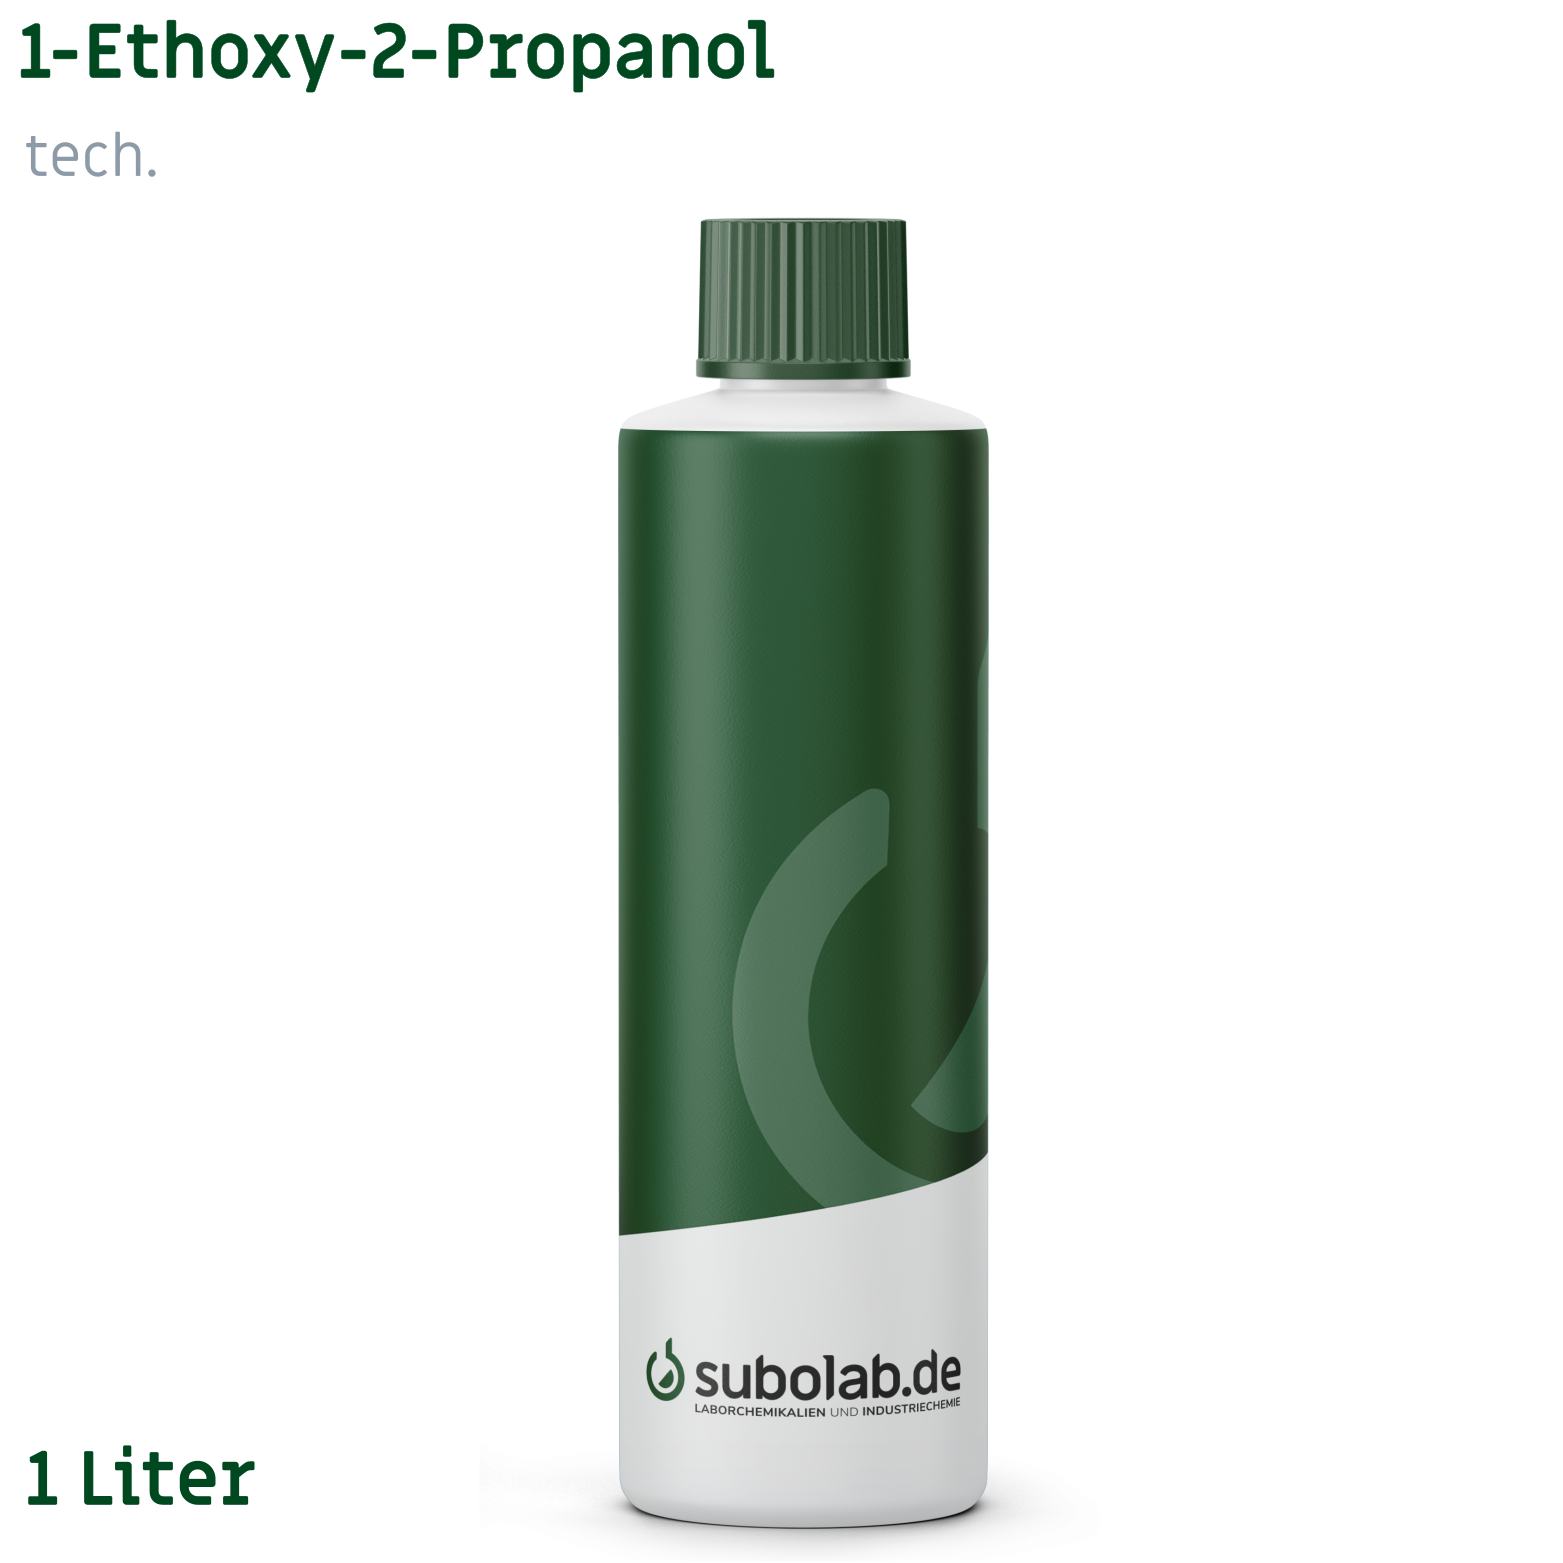 Bild von 1-Ethoxy-2-Propanol tech. (1 Liter)